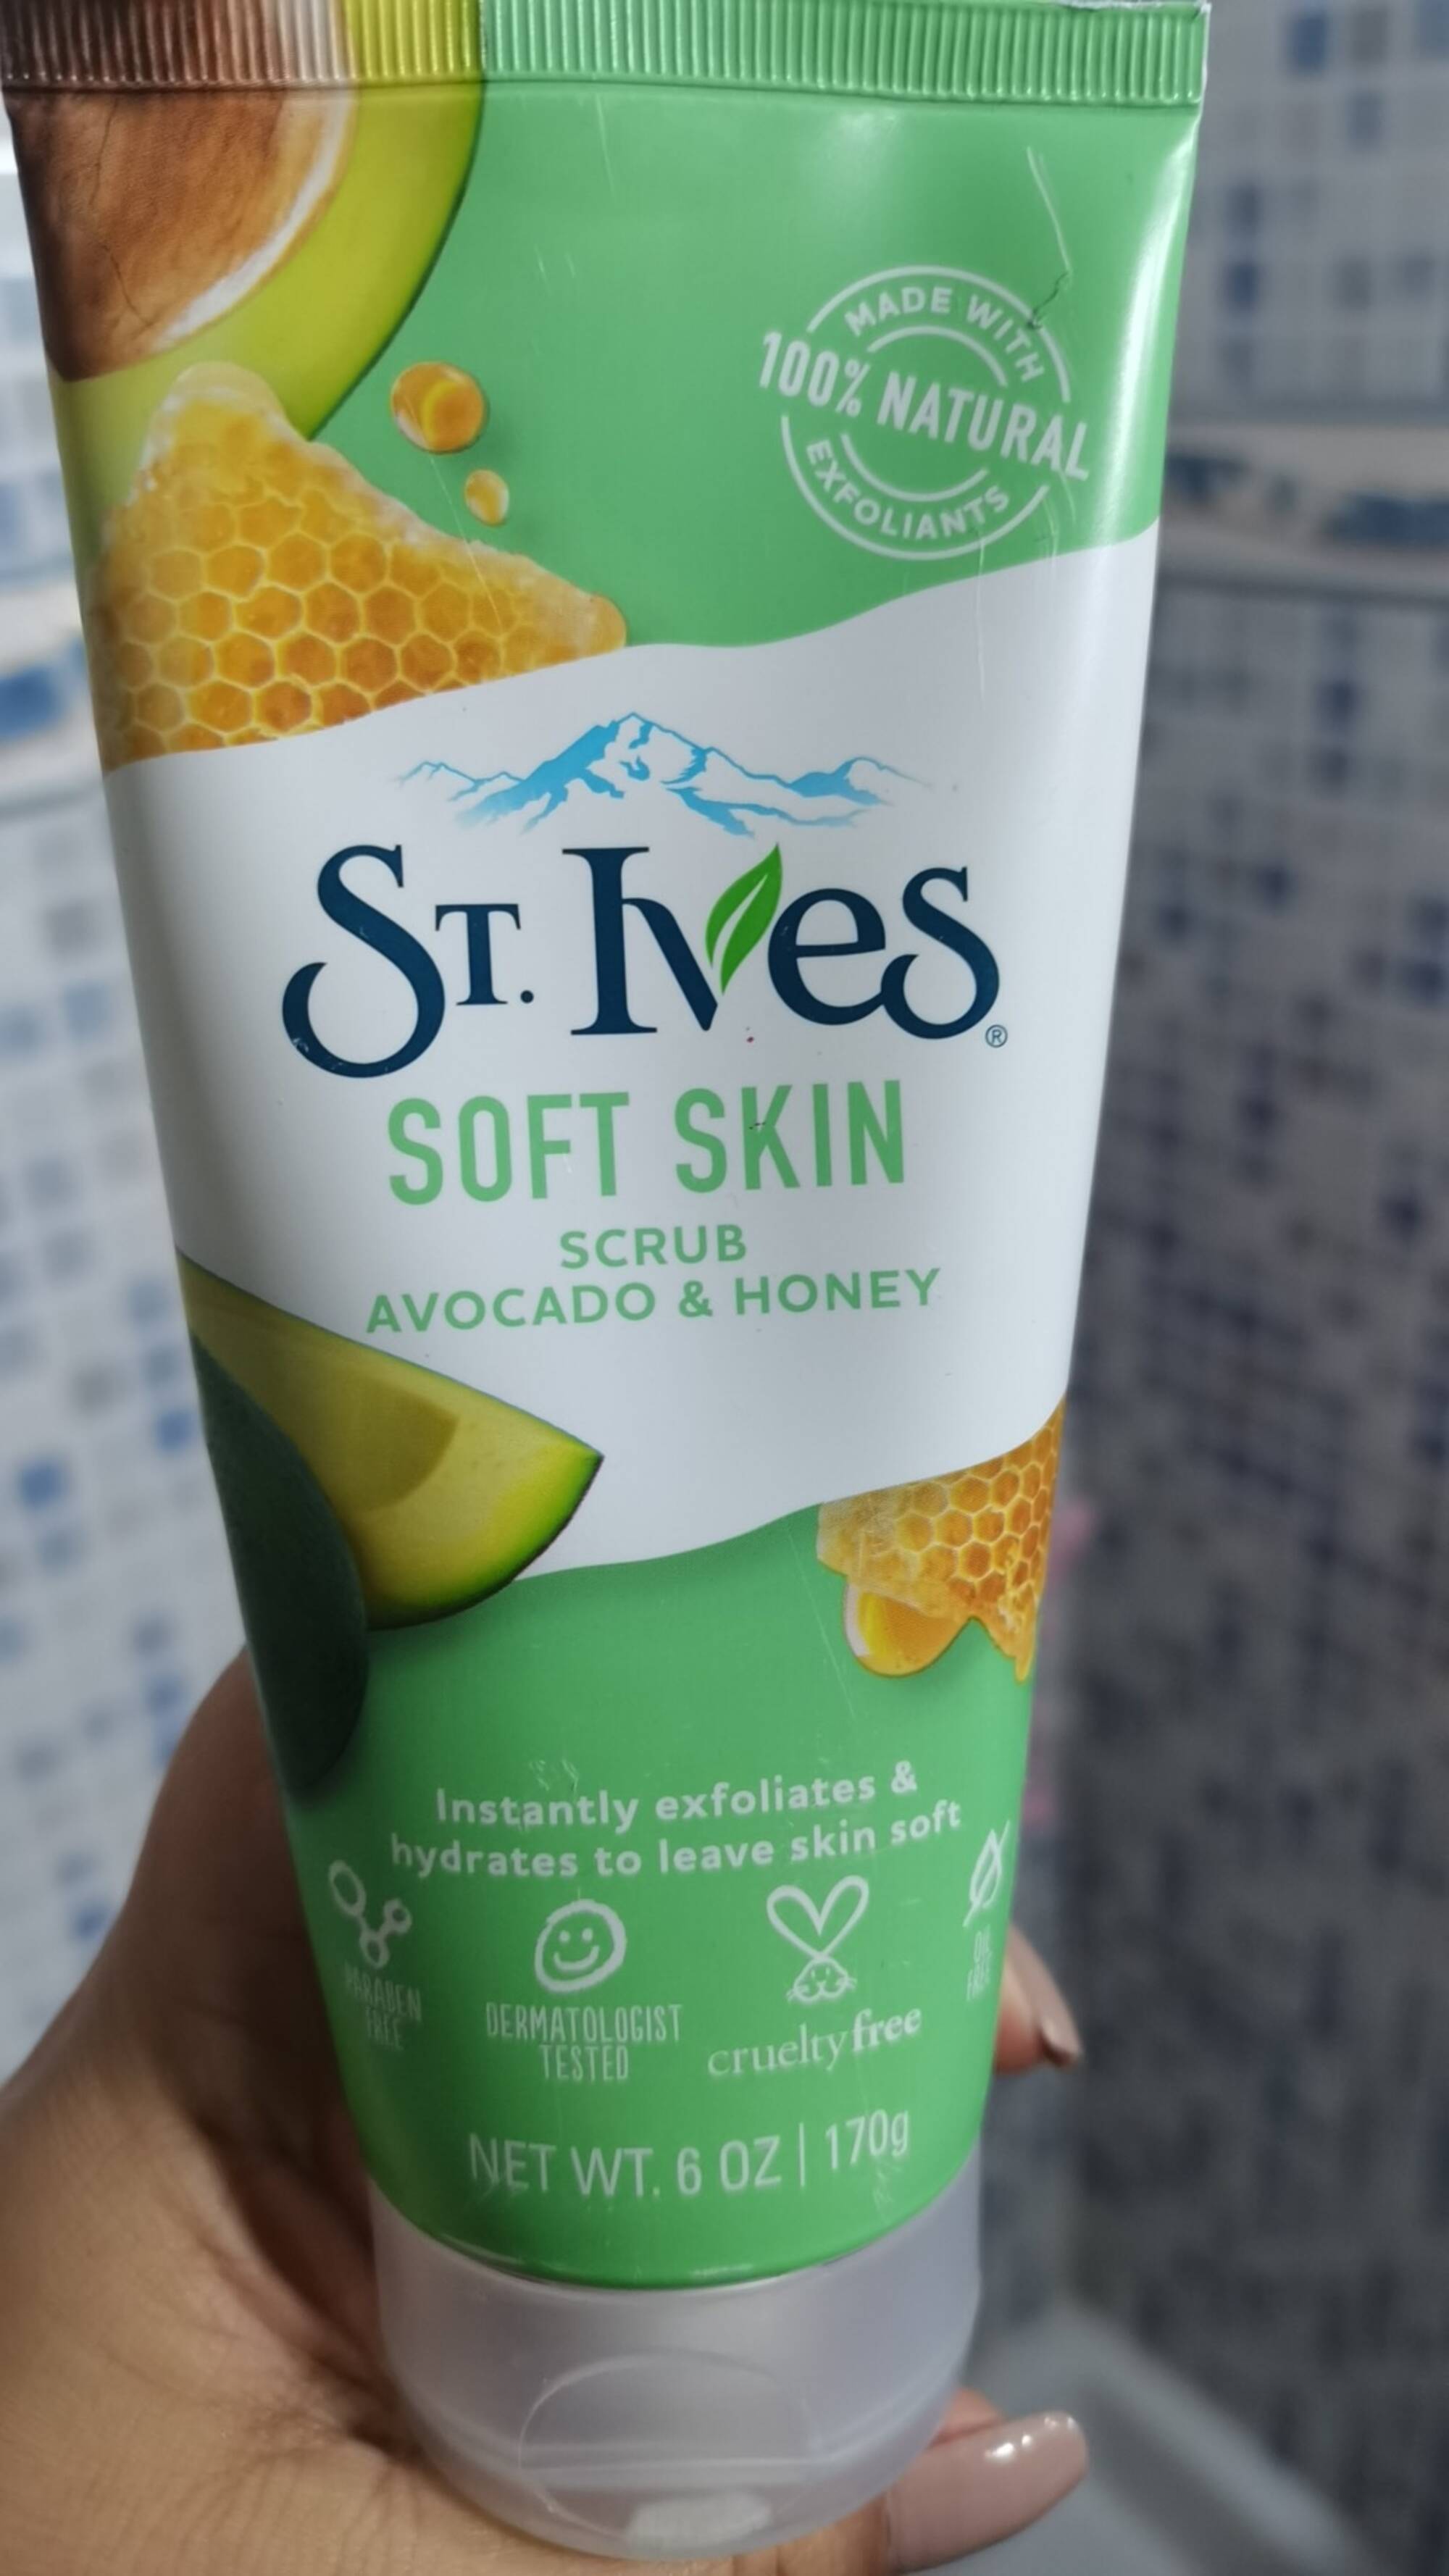 ST IVES - Soft skin - Scrub avocado & honey